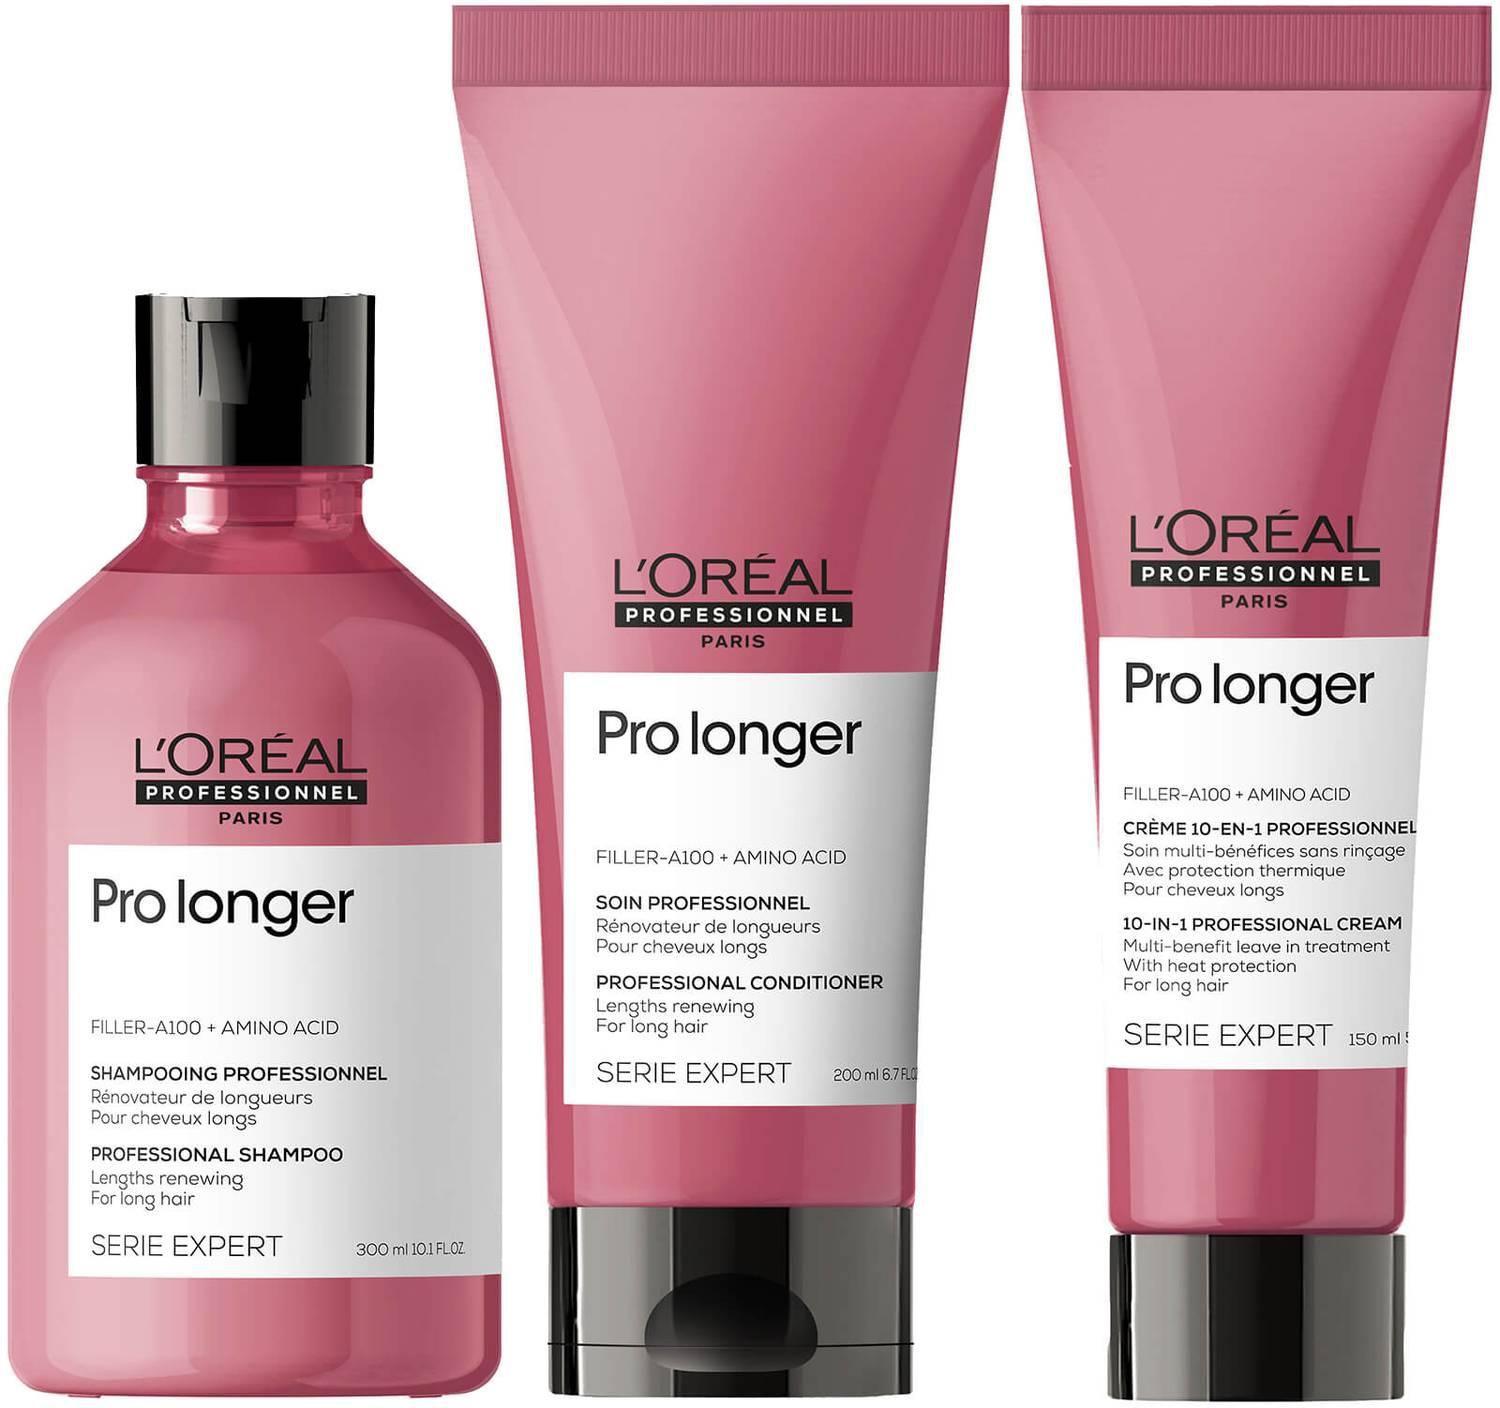 L'Oréal Professionnel Pro Longer Shampoo, Conditioner and Cream Trio